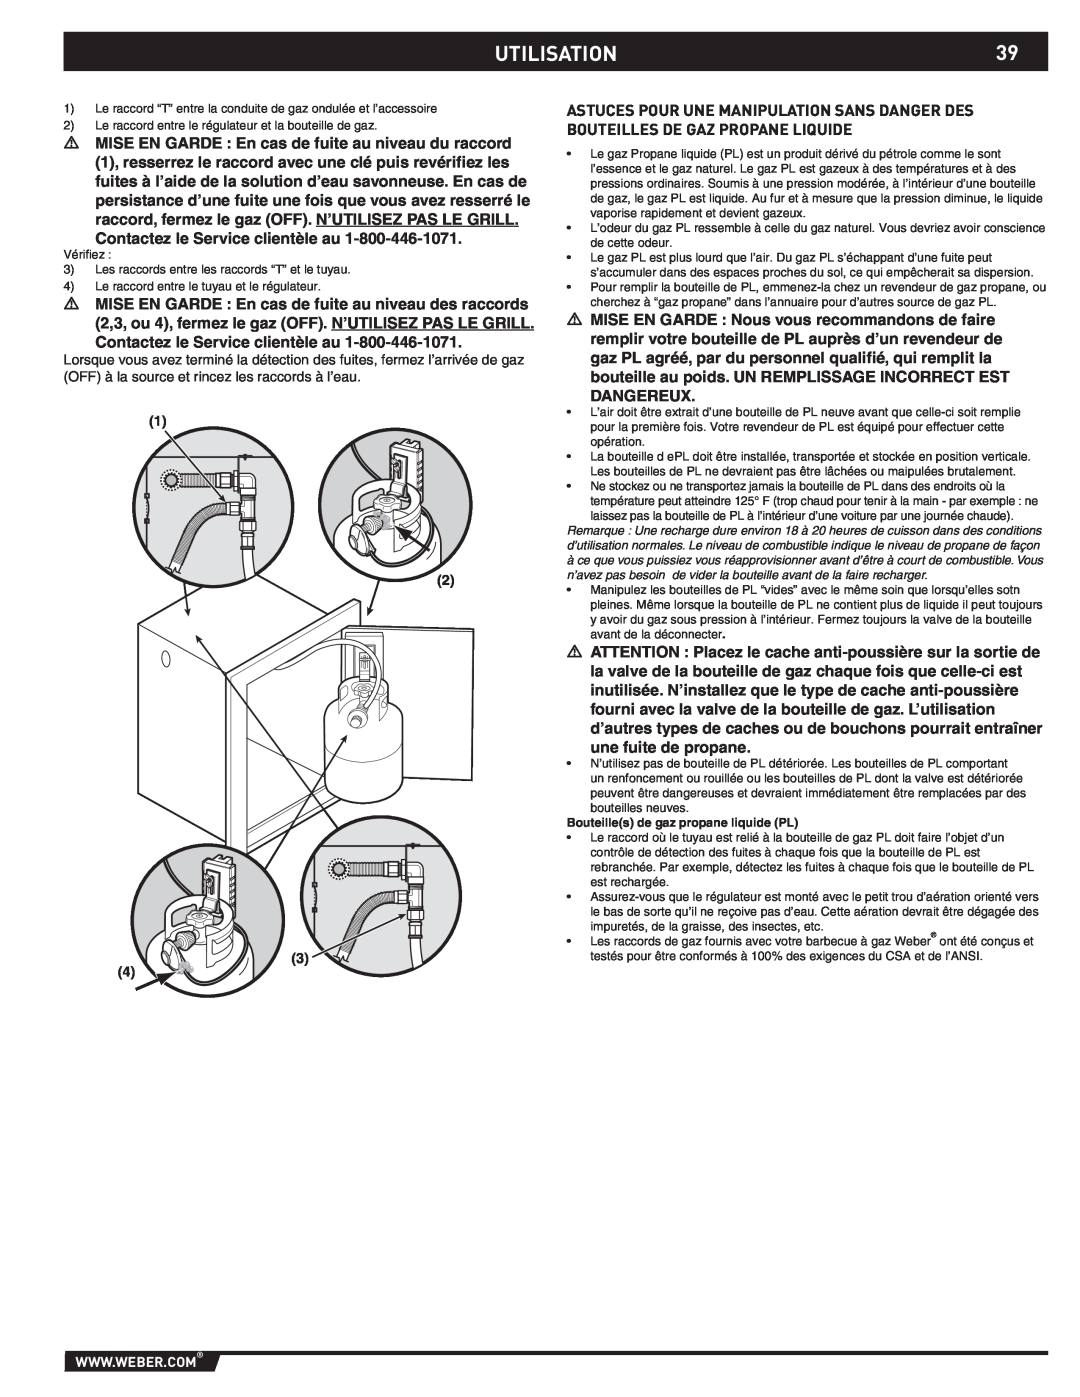 Weber 89796 manual UTILISATION39, Bouteilles de gaz propane liquide PL 